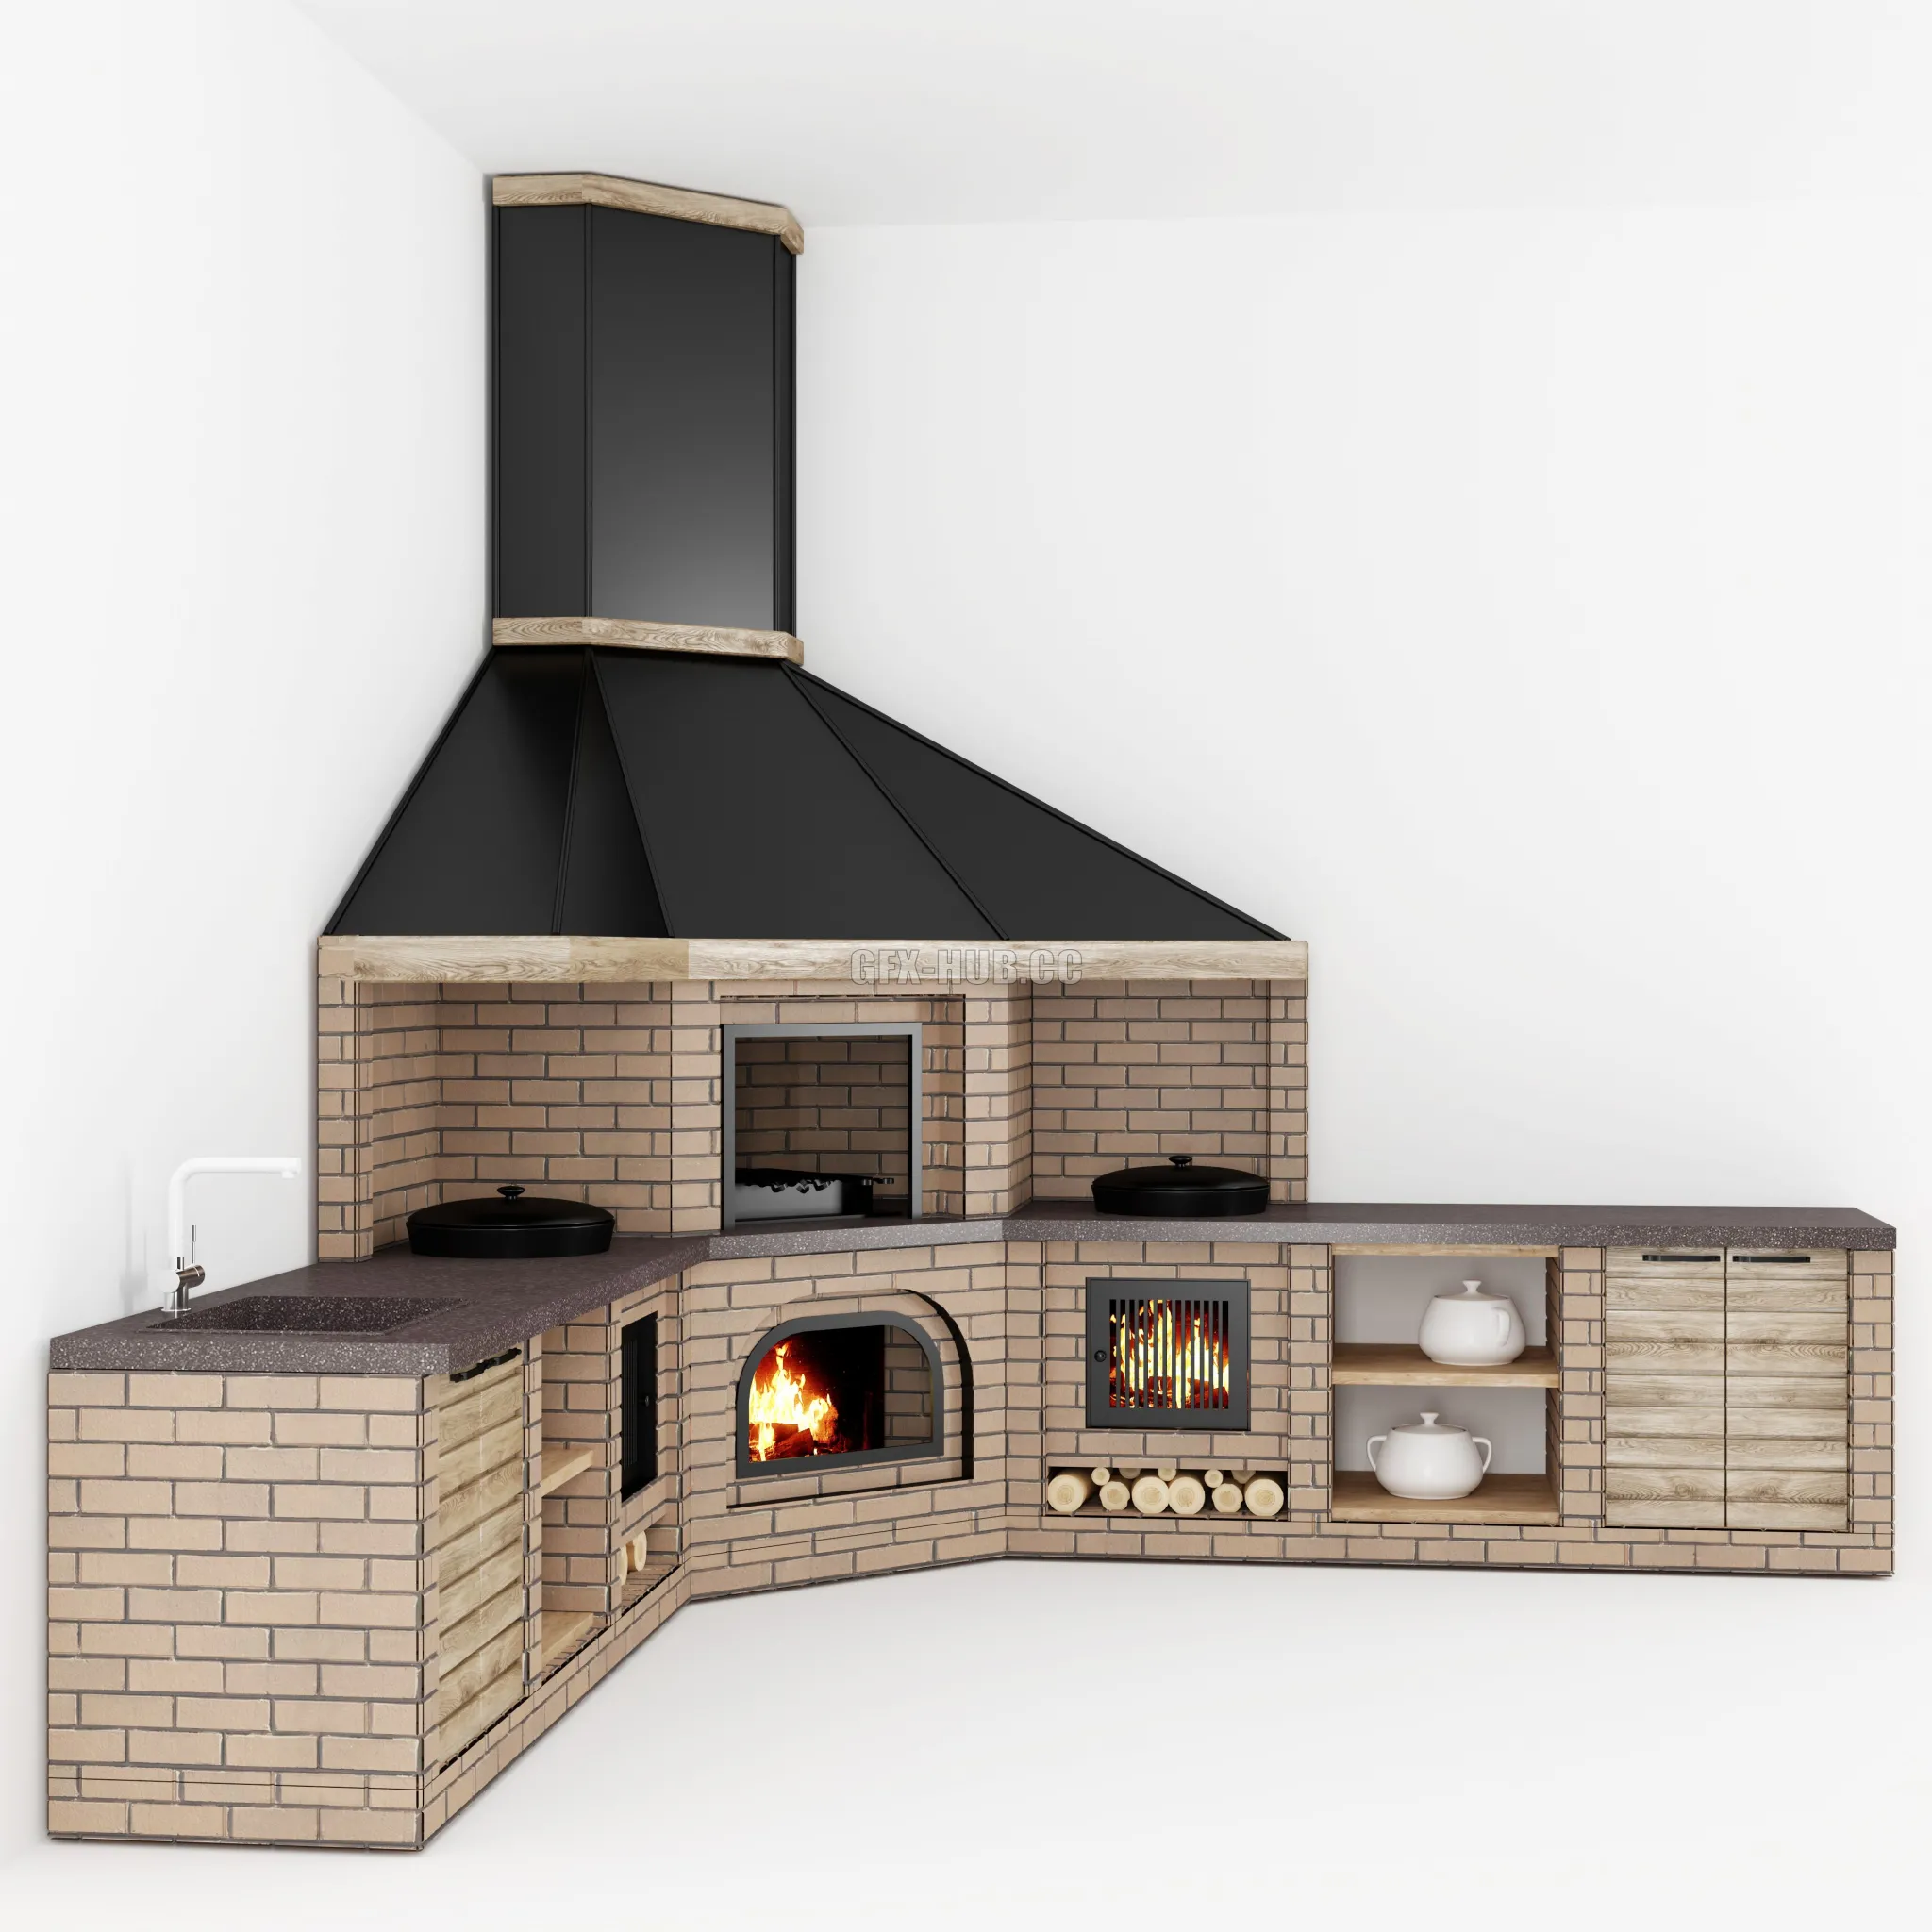 FURNITURE 3D MODELS – Summer Kitchen 1